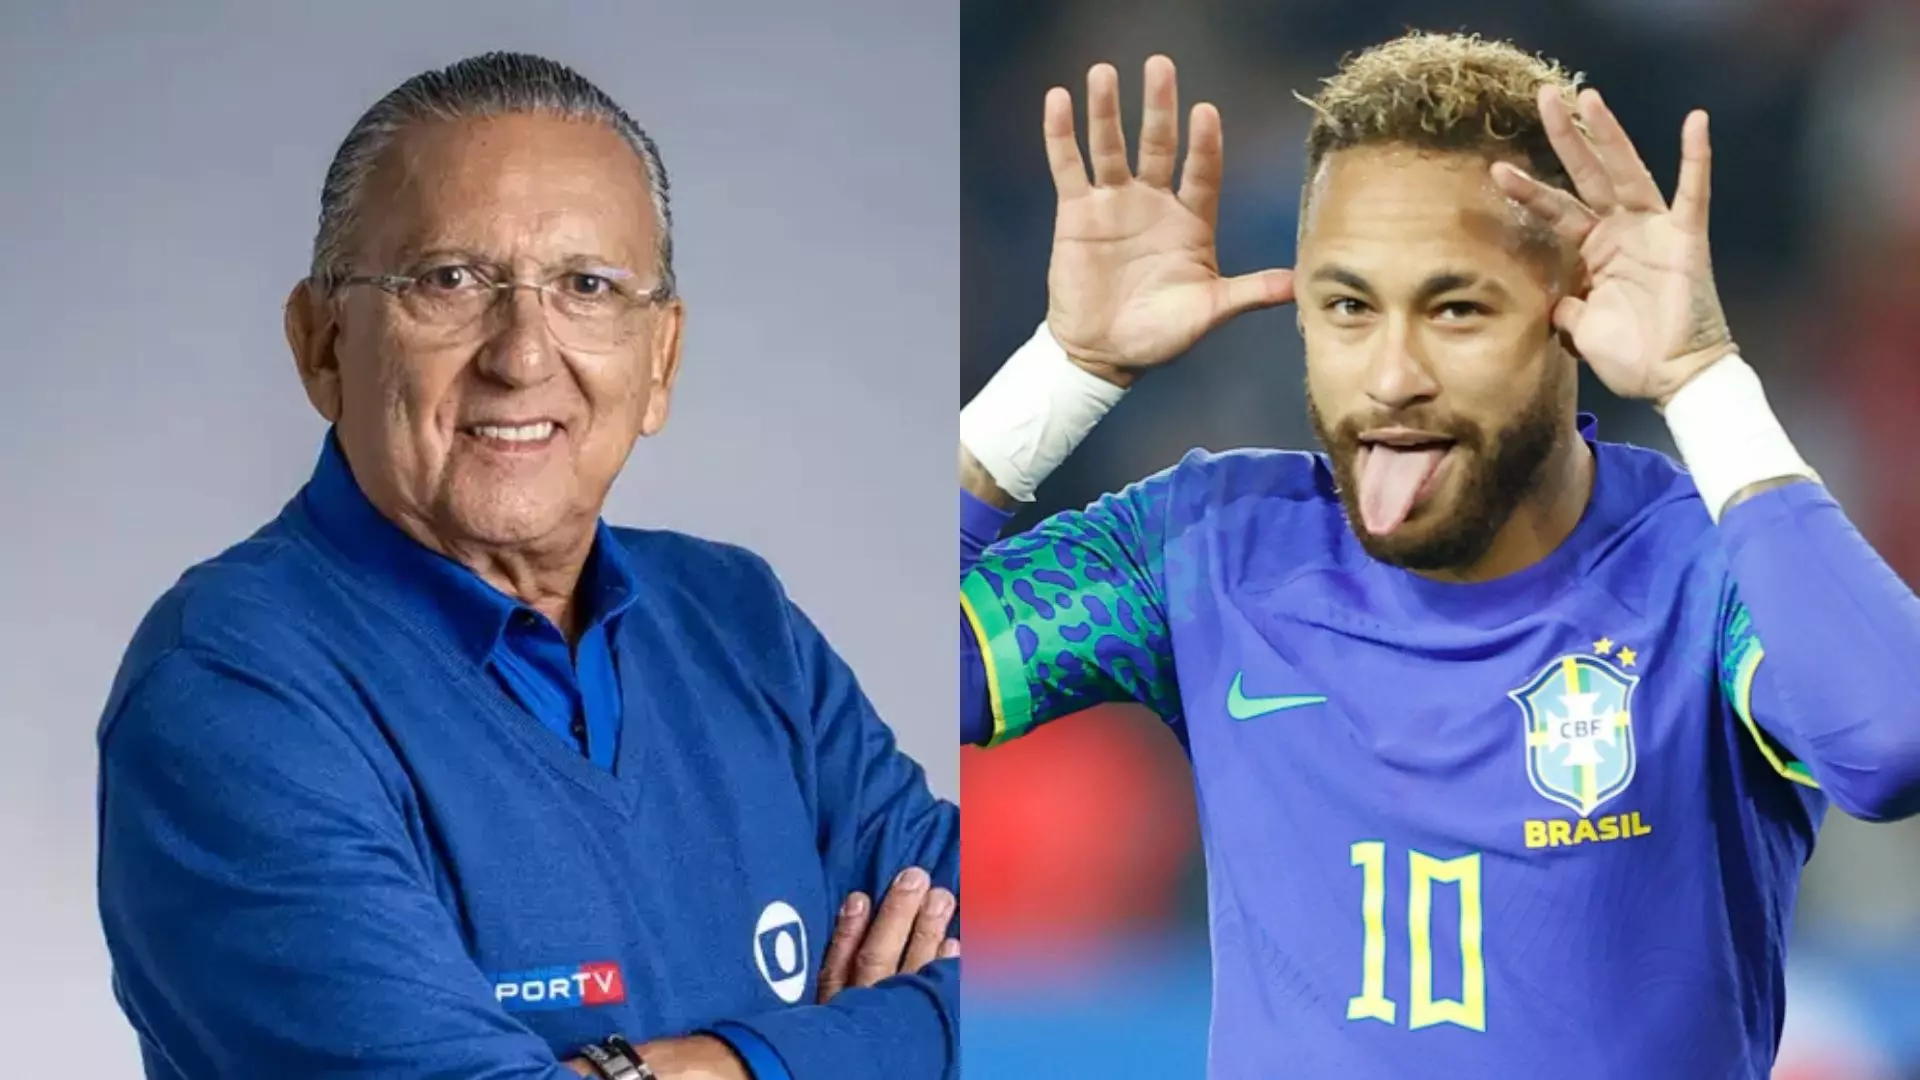 Galvão Bueno e Neymar Jr.